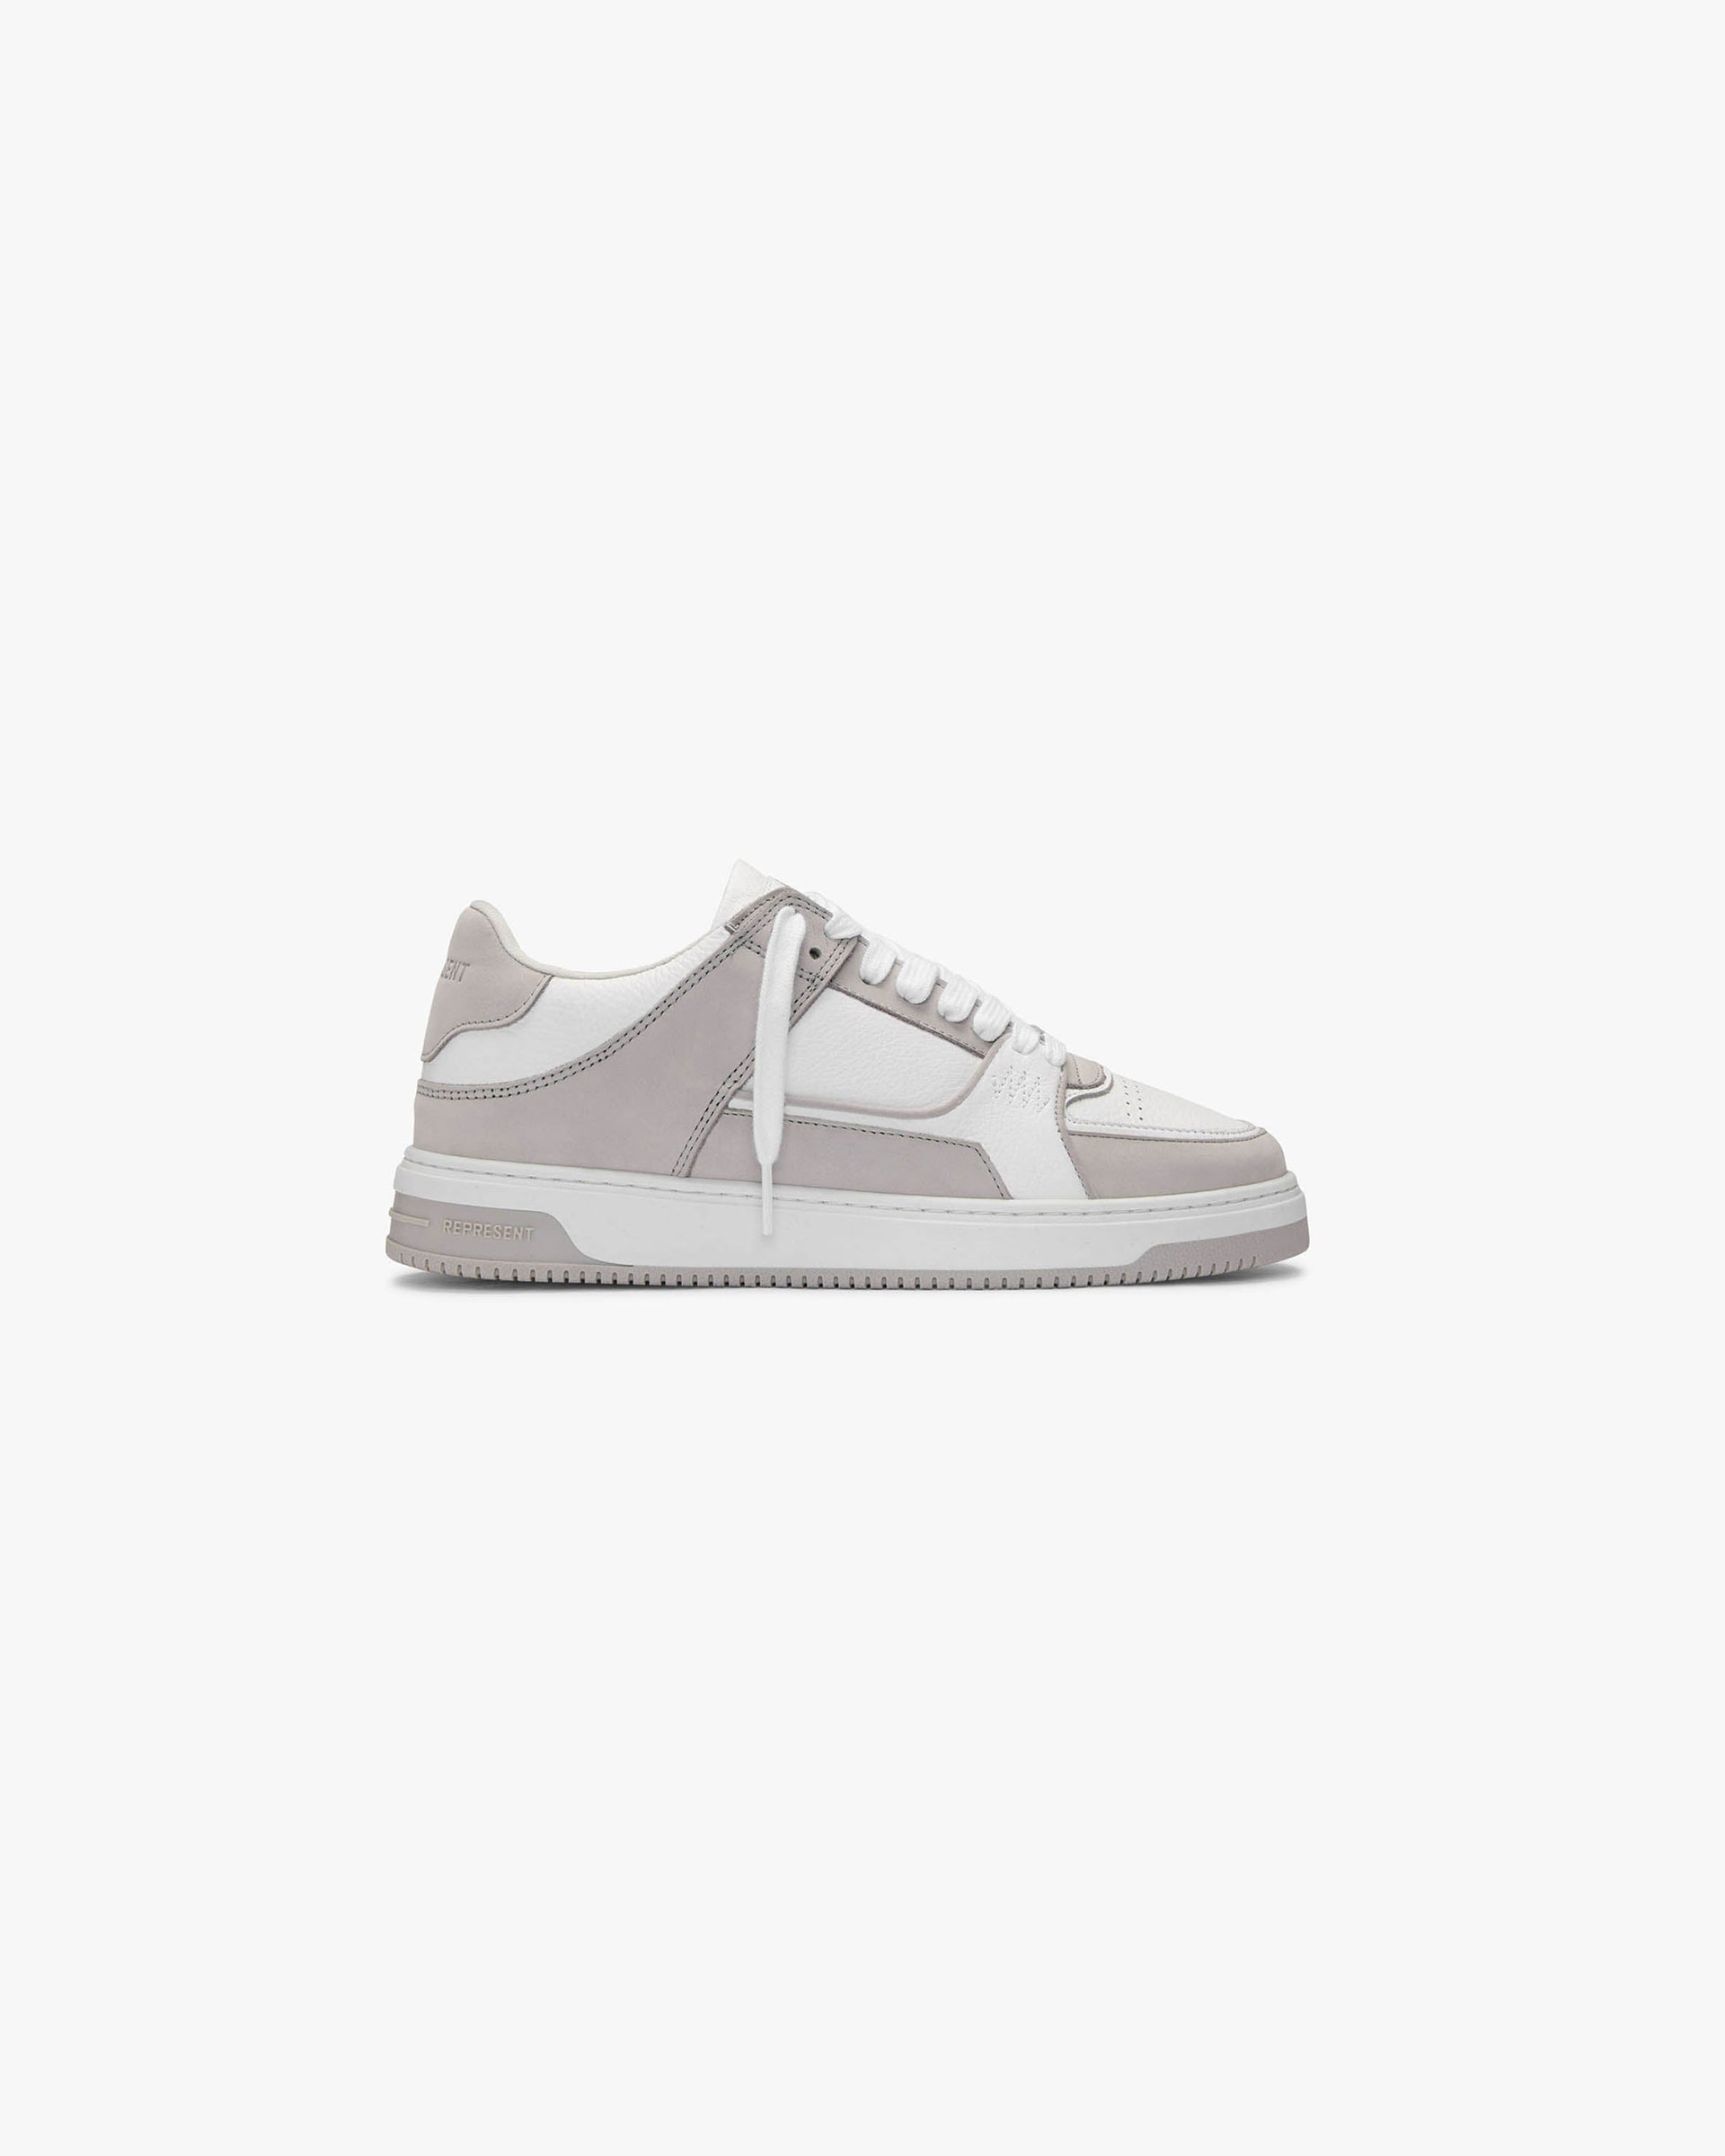 Apex | Concrete White Footwear SS22 | Represent Clo